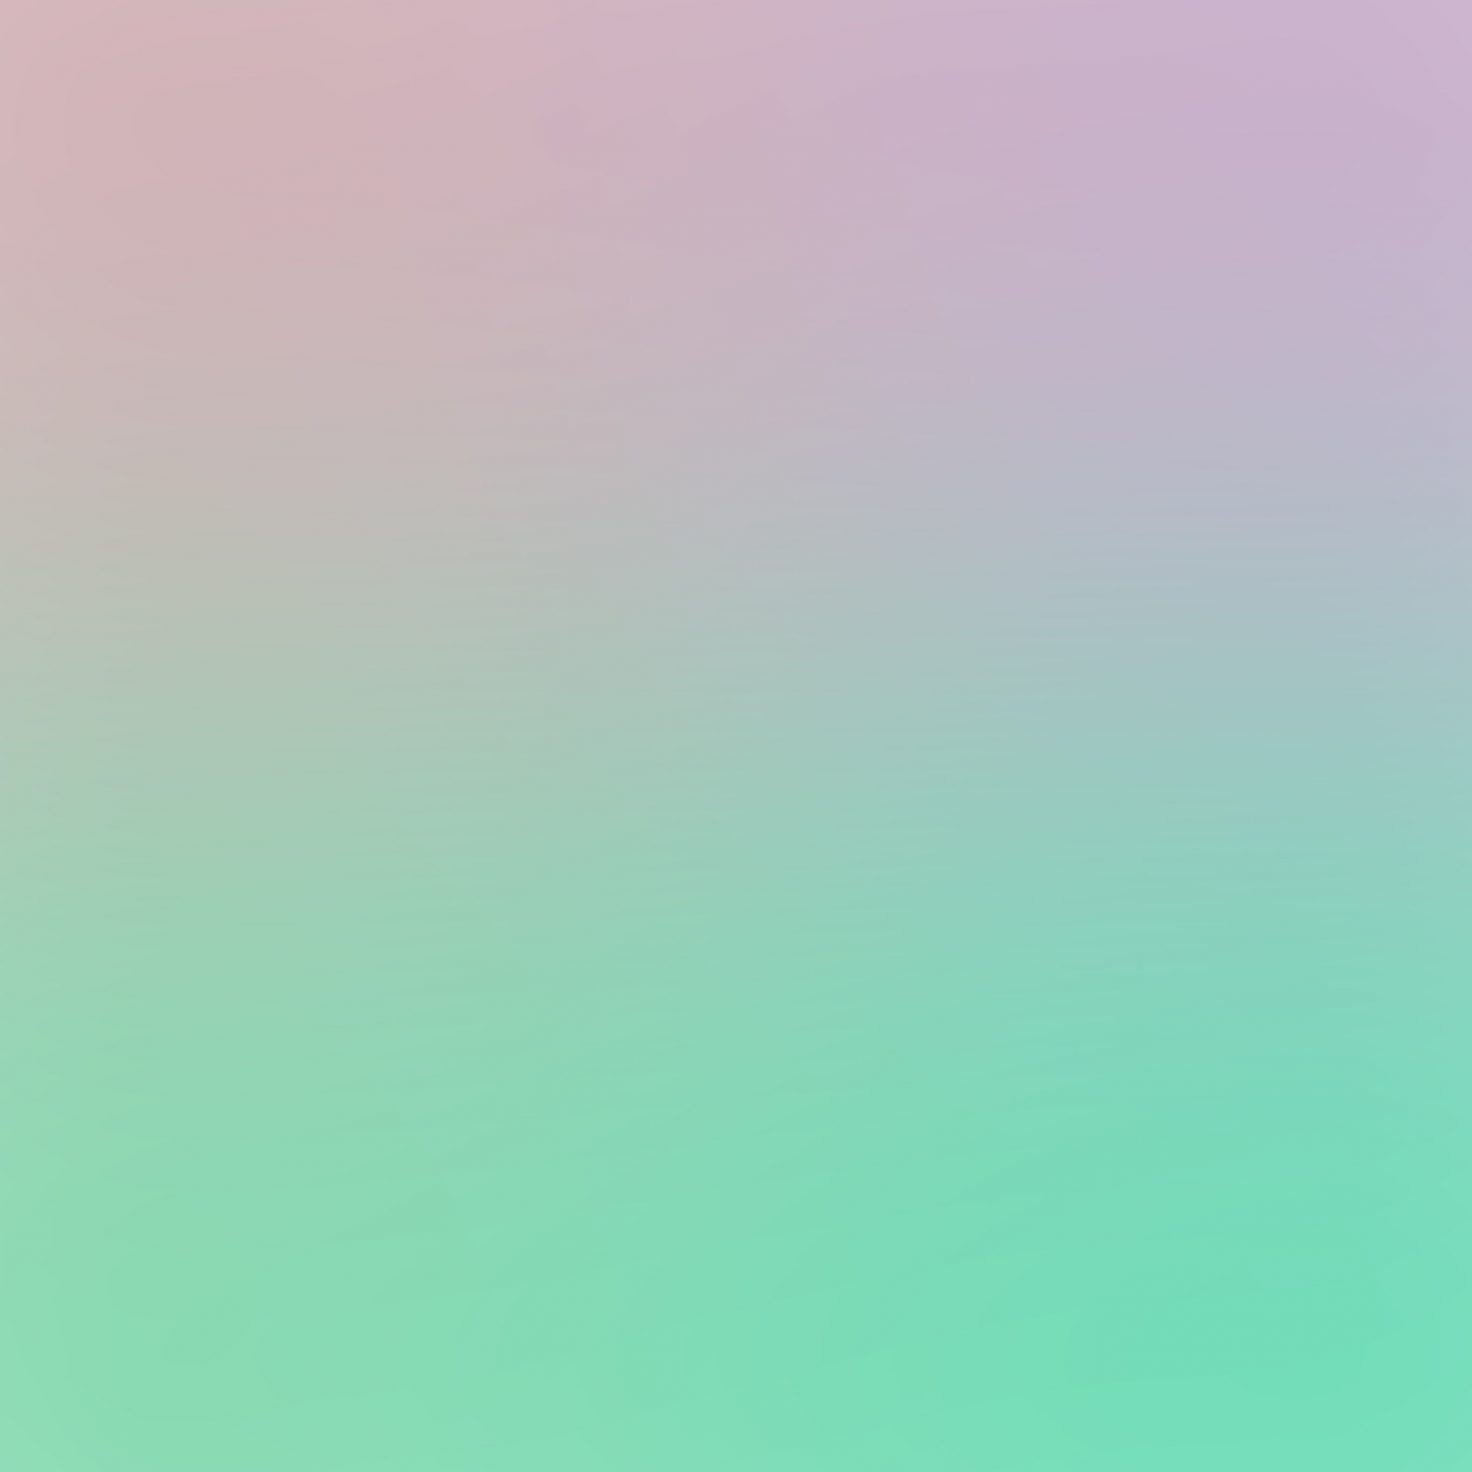 green-purple-soft-blur-gradation-ipad-pro-1472×1472